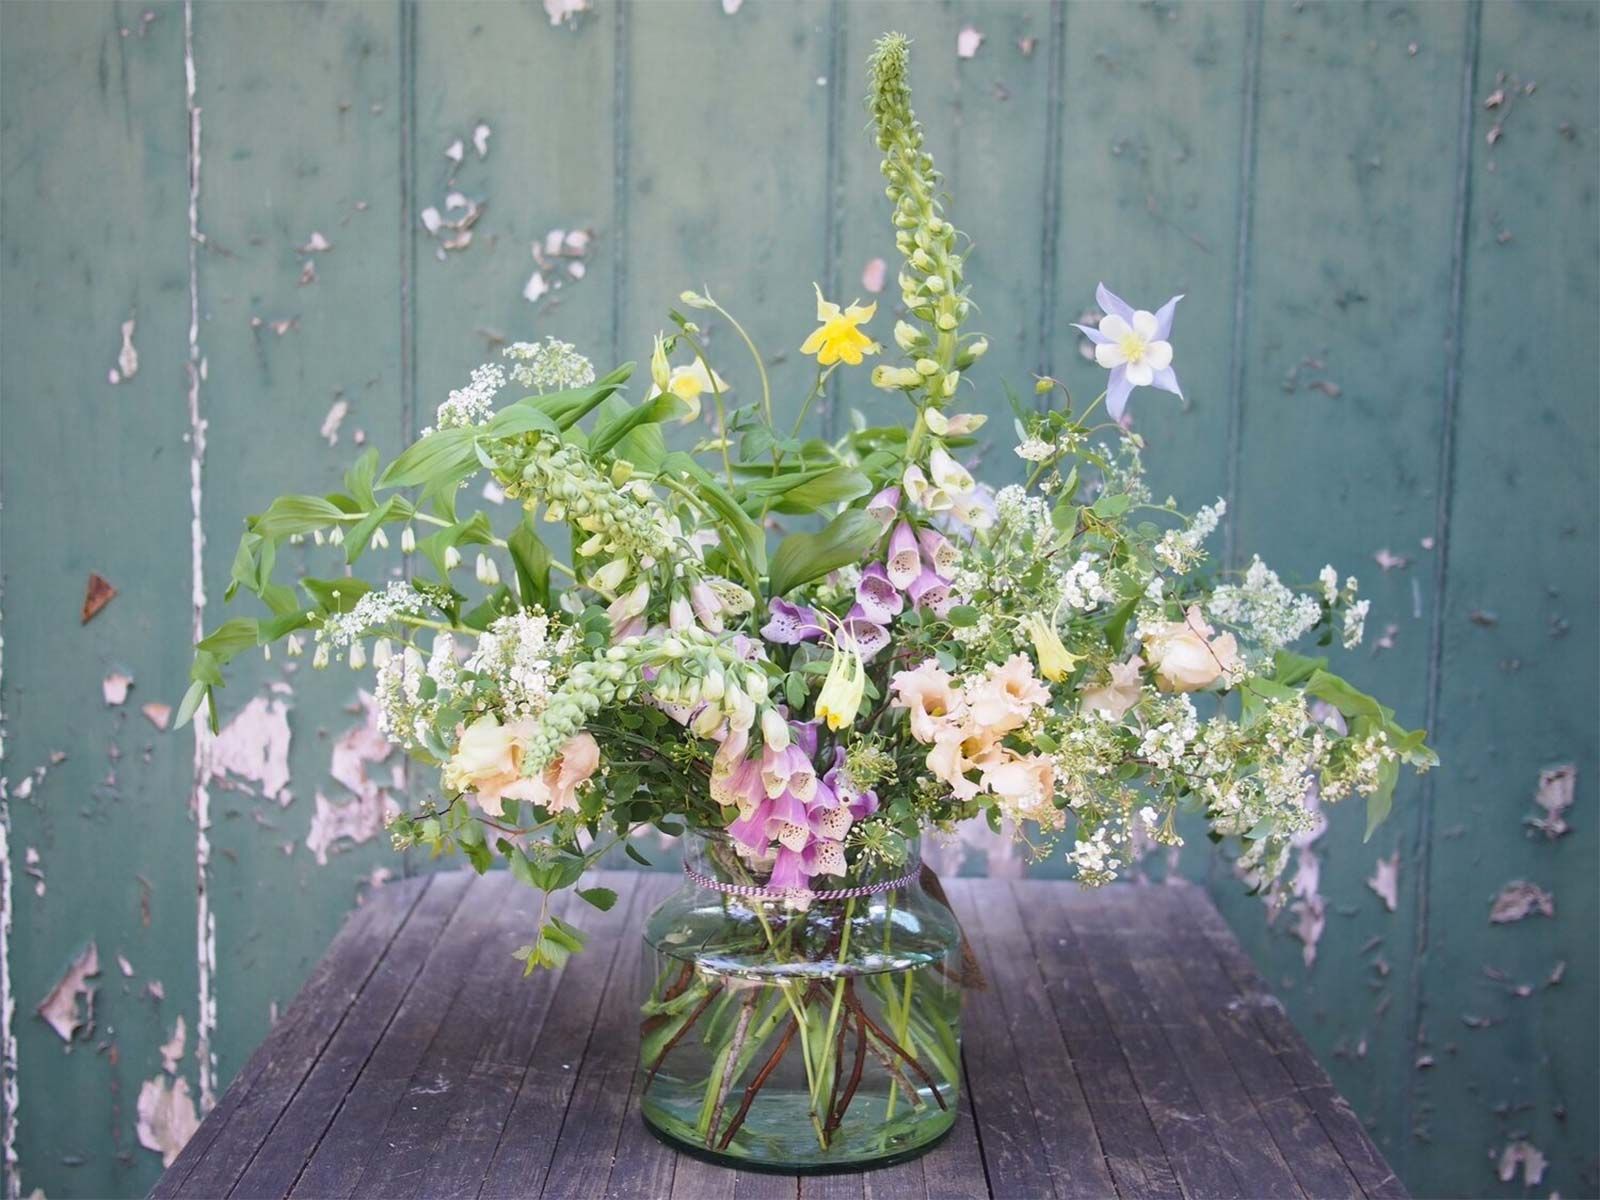 Así puedes crear preciosos arreglos florales de una sola tonalidad - Foto 1